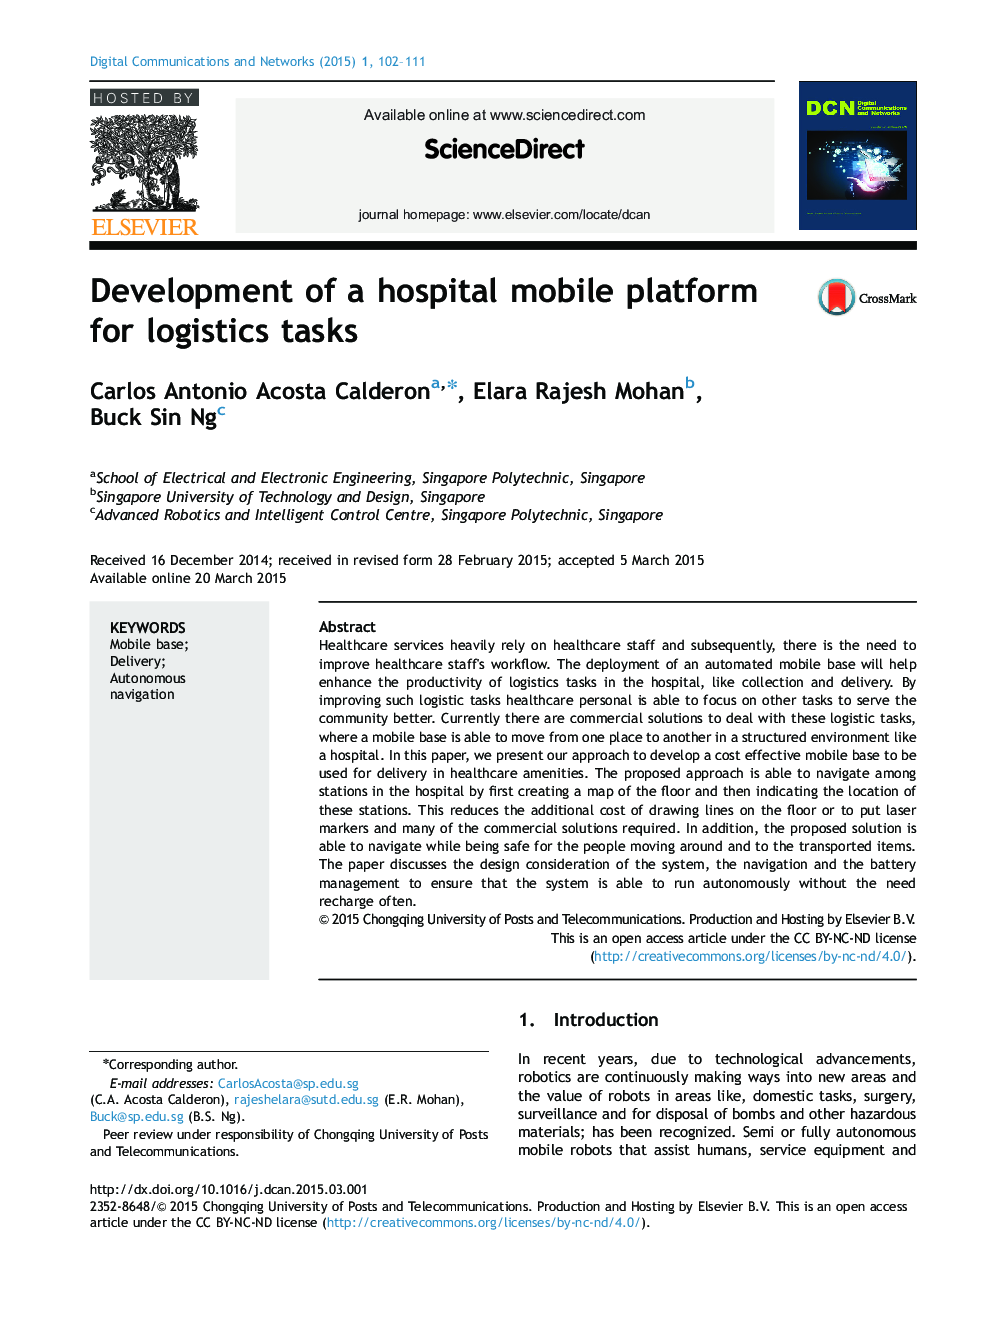 Development of a hospital mobile platform for logistics tasks 